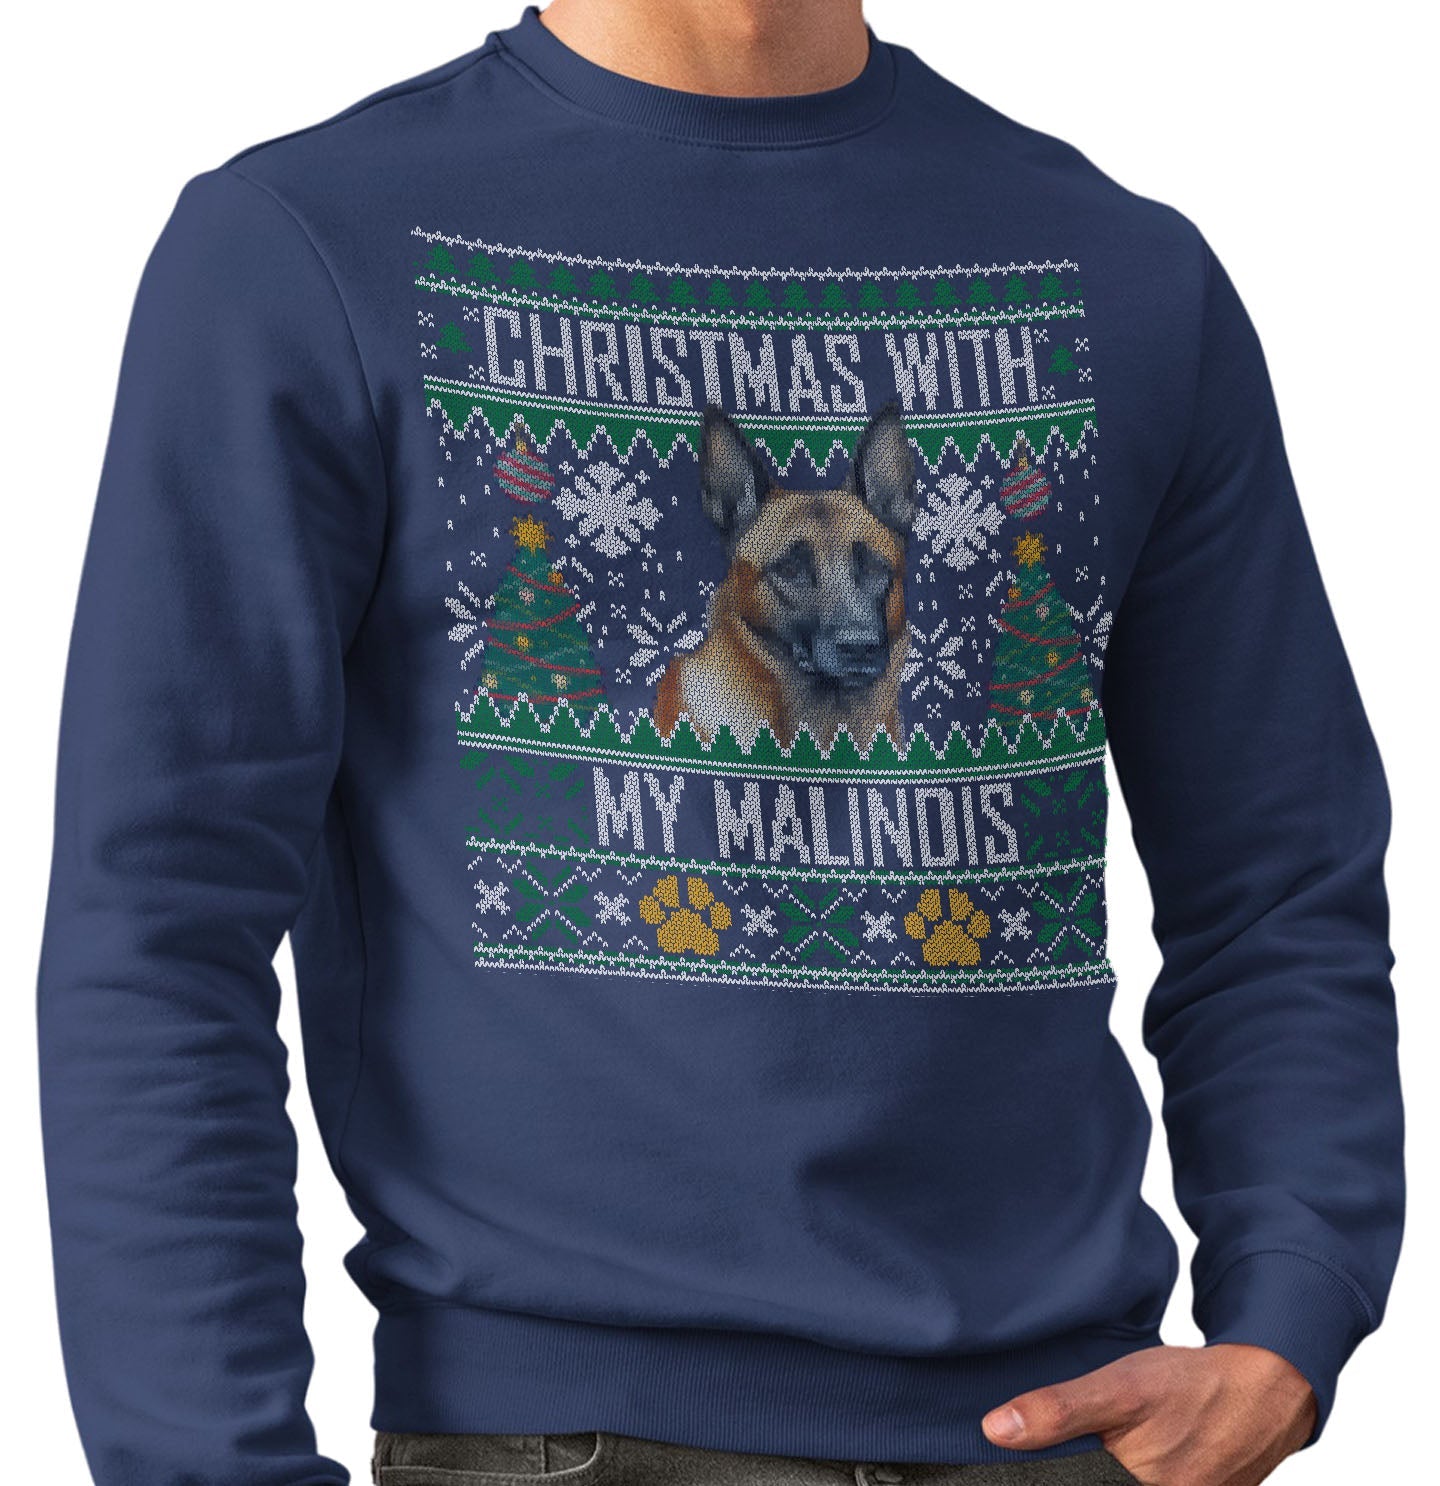 Ugly Sweater Christmas with My Belgian Malinois - Adult Unisex Crewneck Sweatshirt